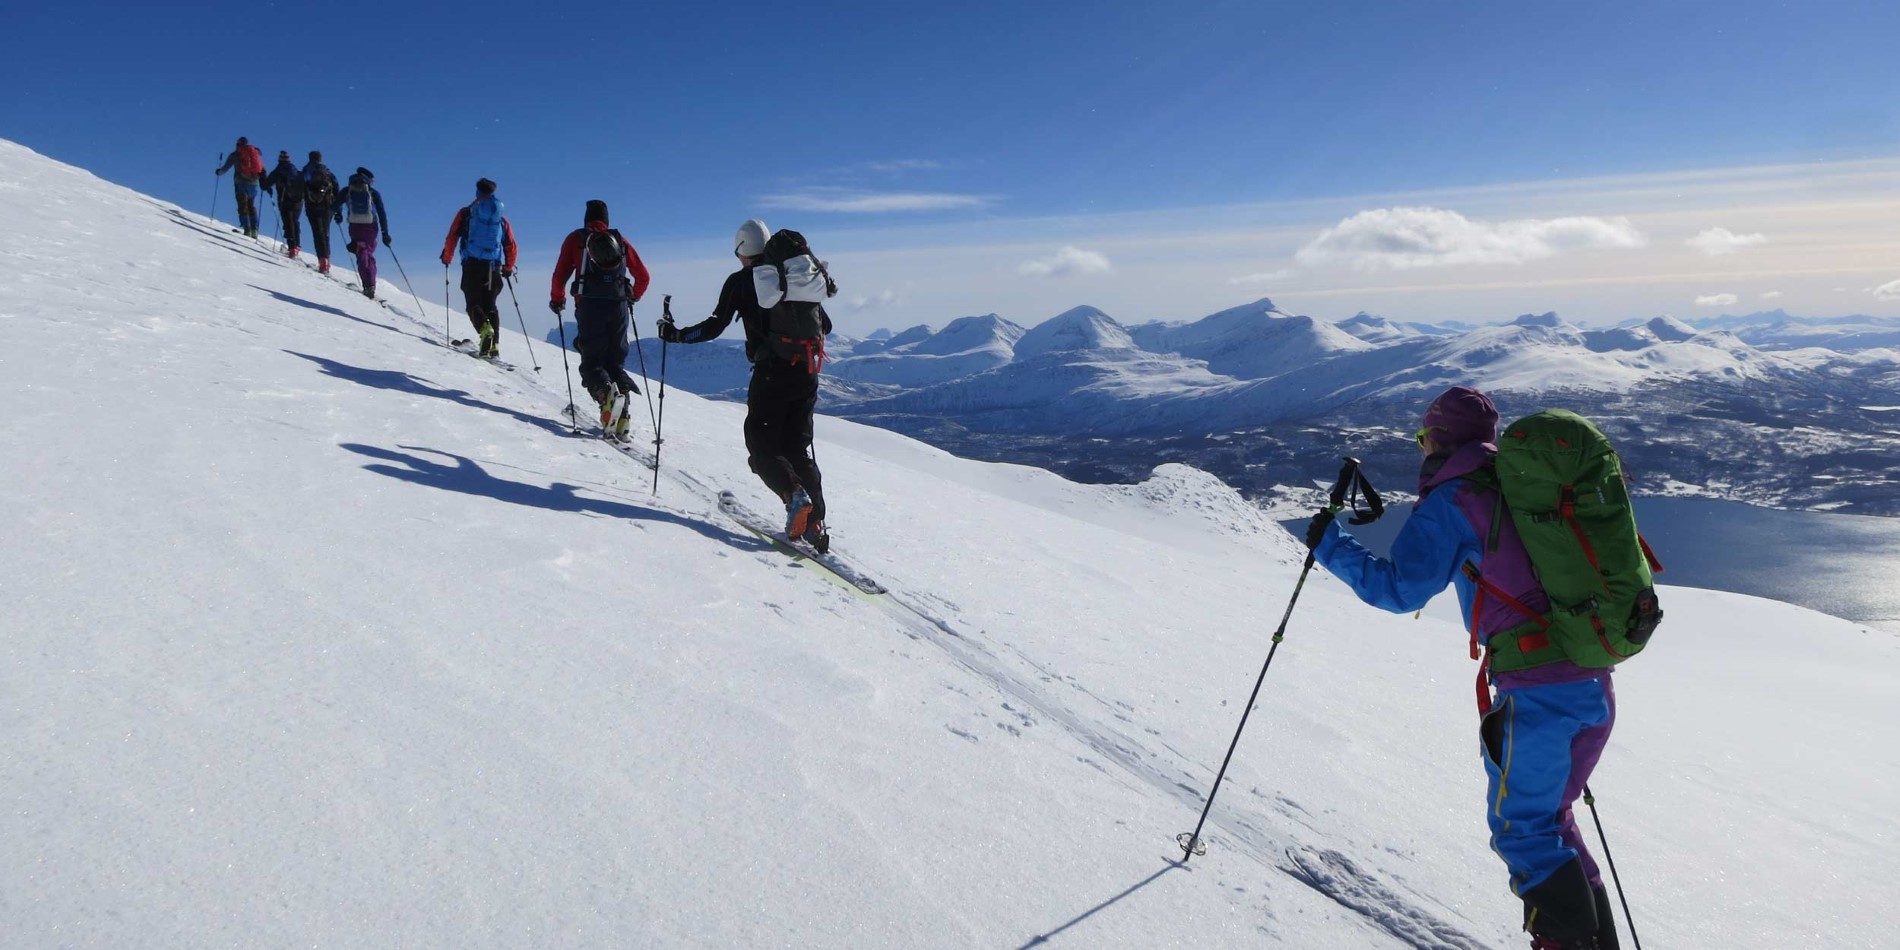 En grupp människor åker skidor nedför en snötäckt sluttning